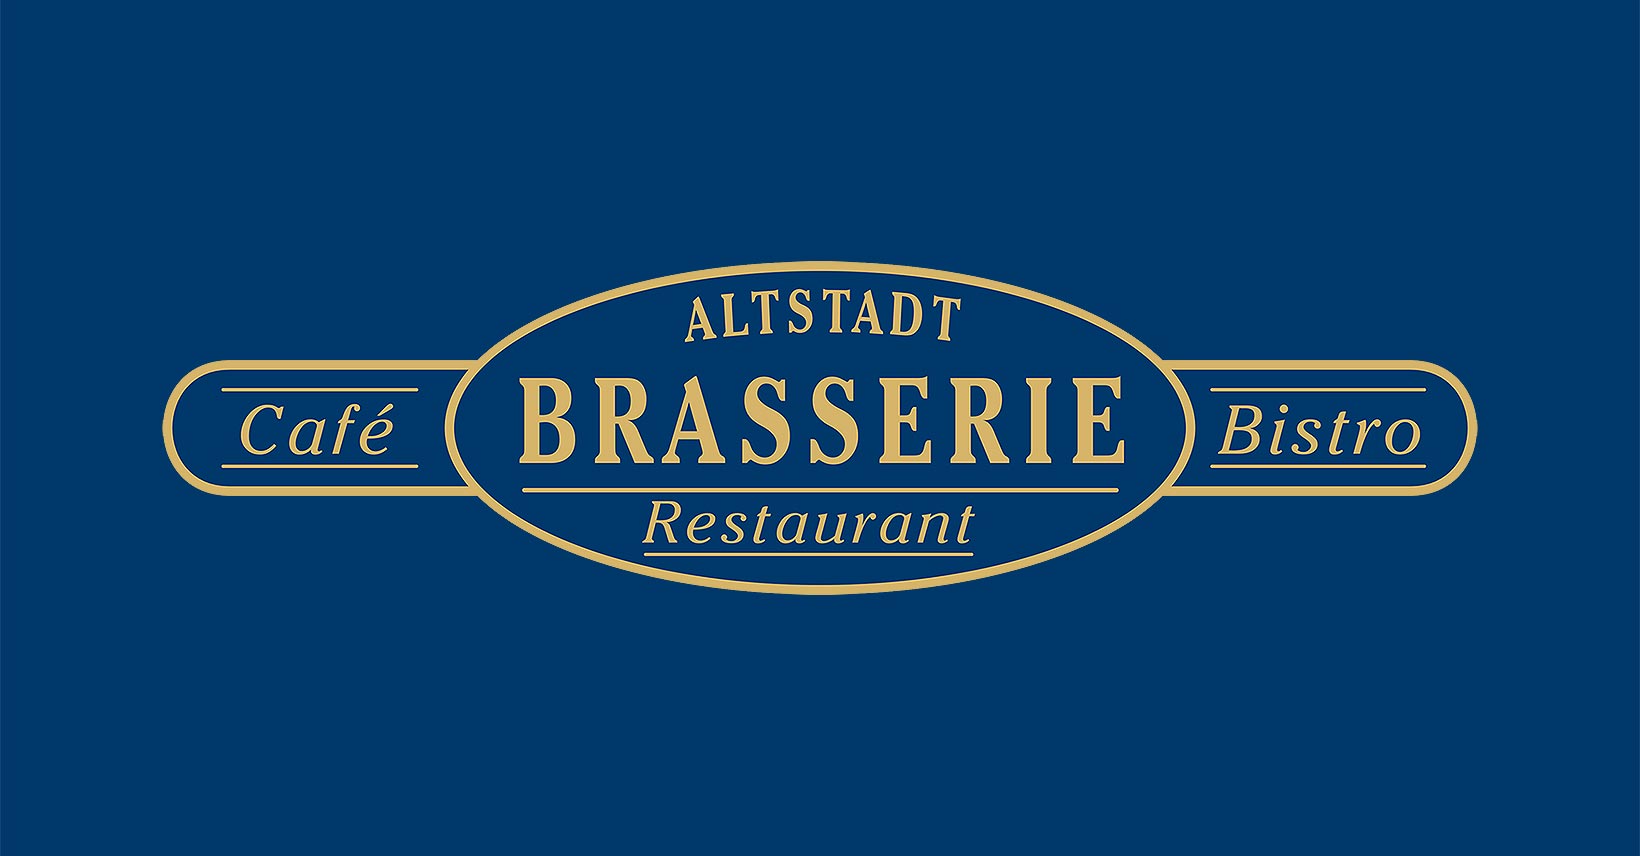 (c) Altstadt-brasserie.de